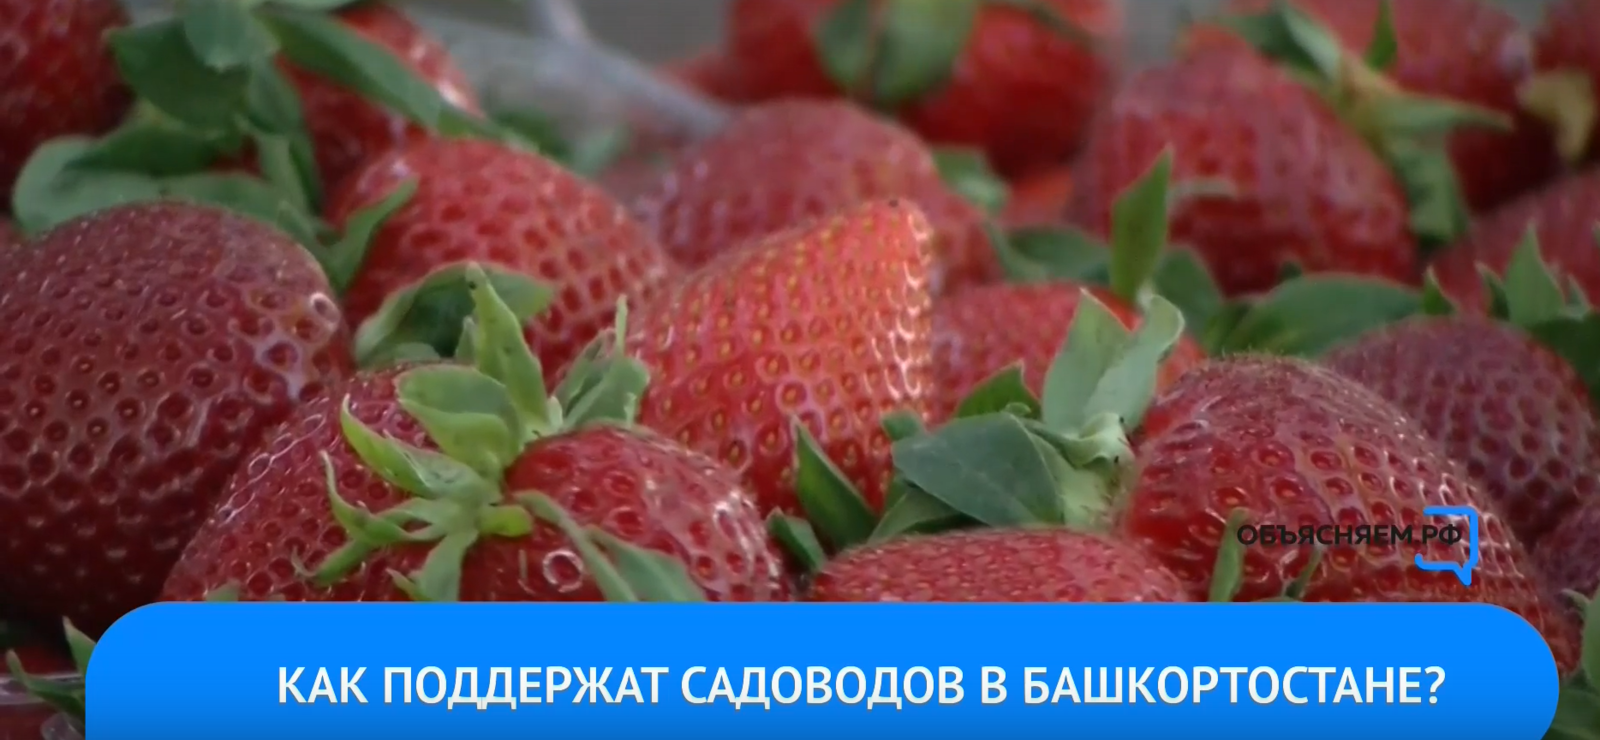 Жители Башкортостана, которые выращивают картофель и овощи, смогут получить поддержку от государства